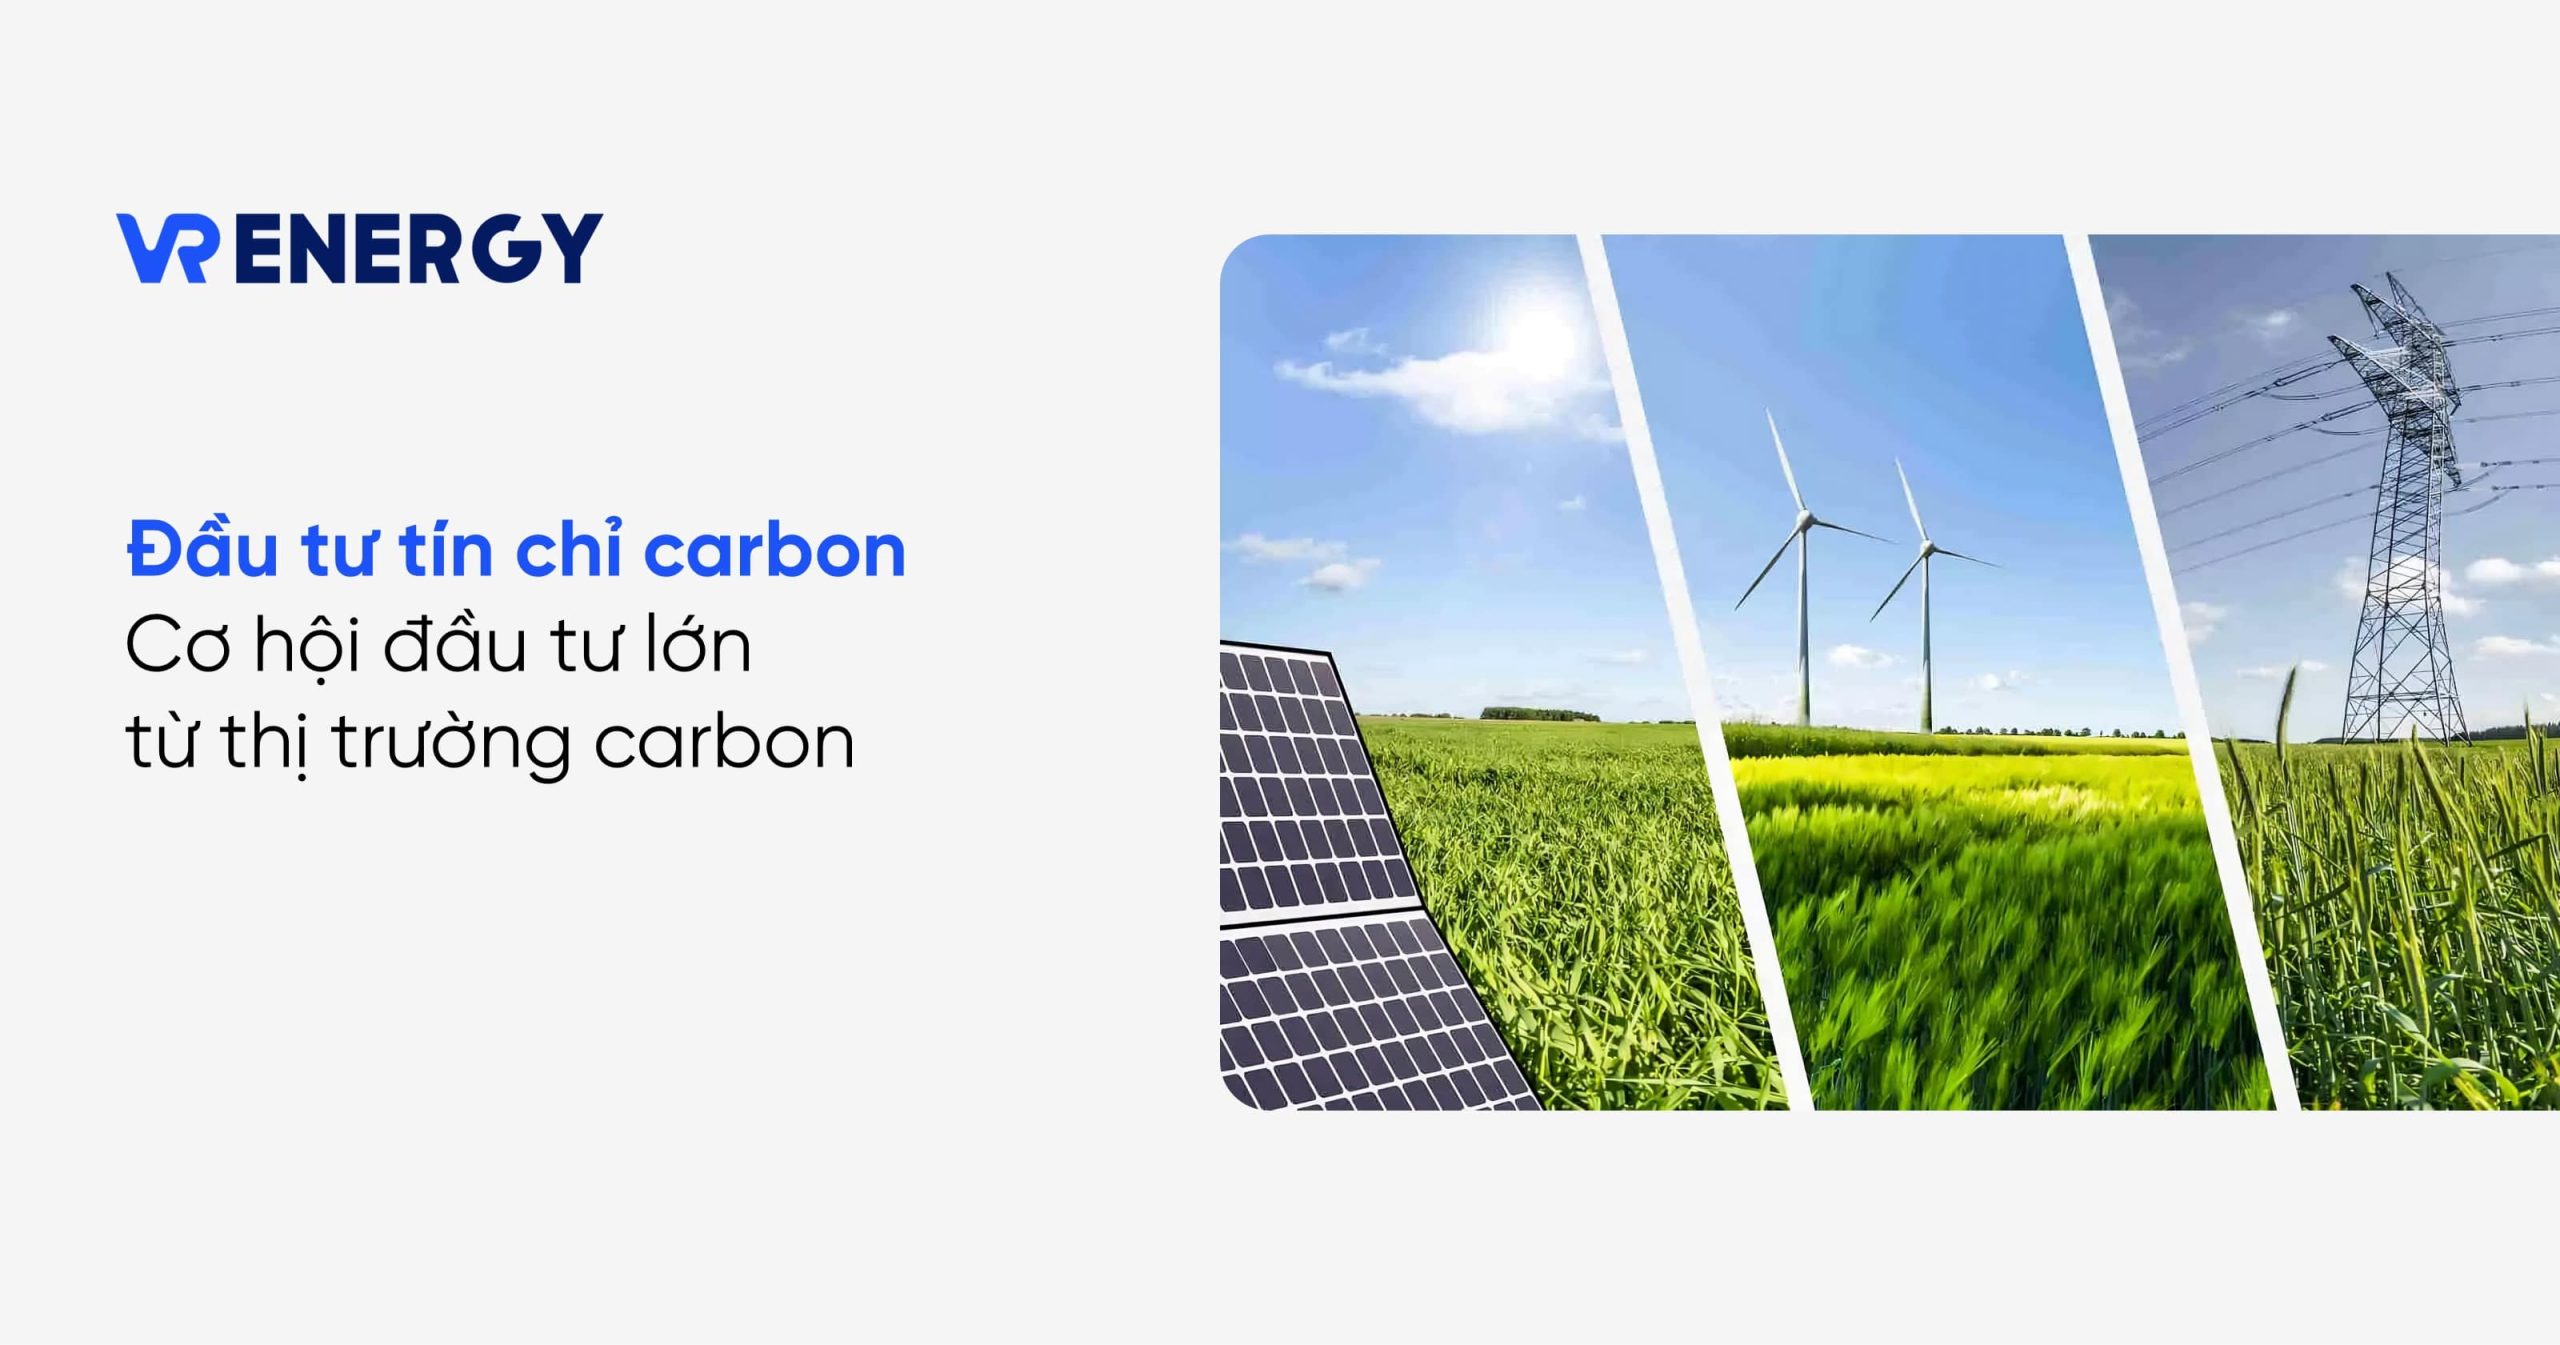 Đầu tư tín chỉ carbon: Cơ hội đầu tư lớn từ thị trường carbon